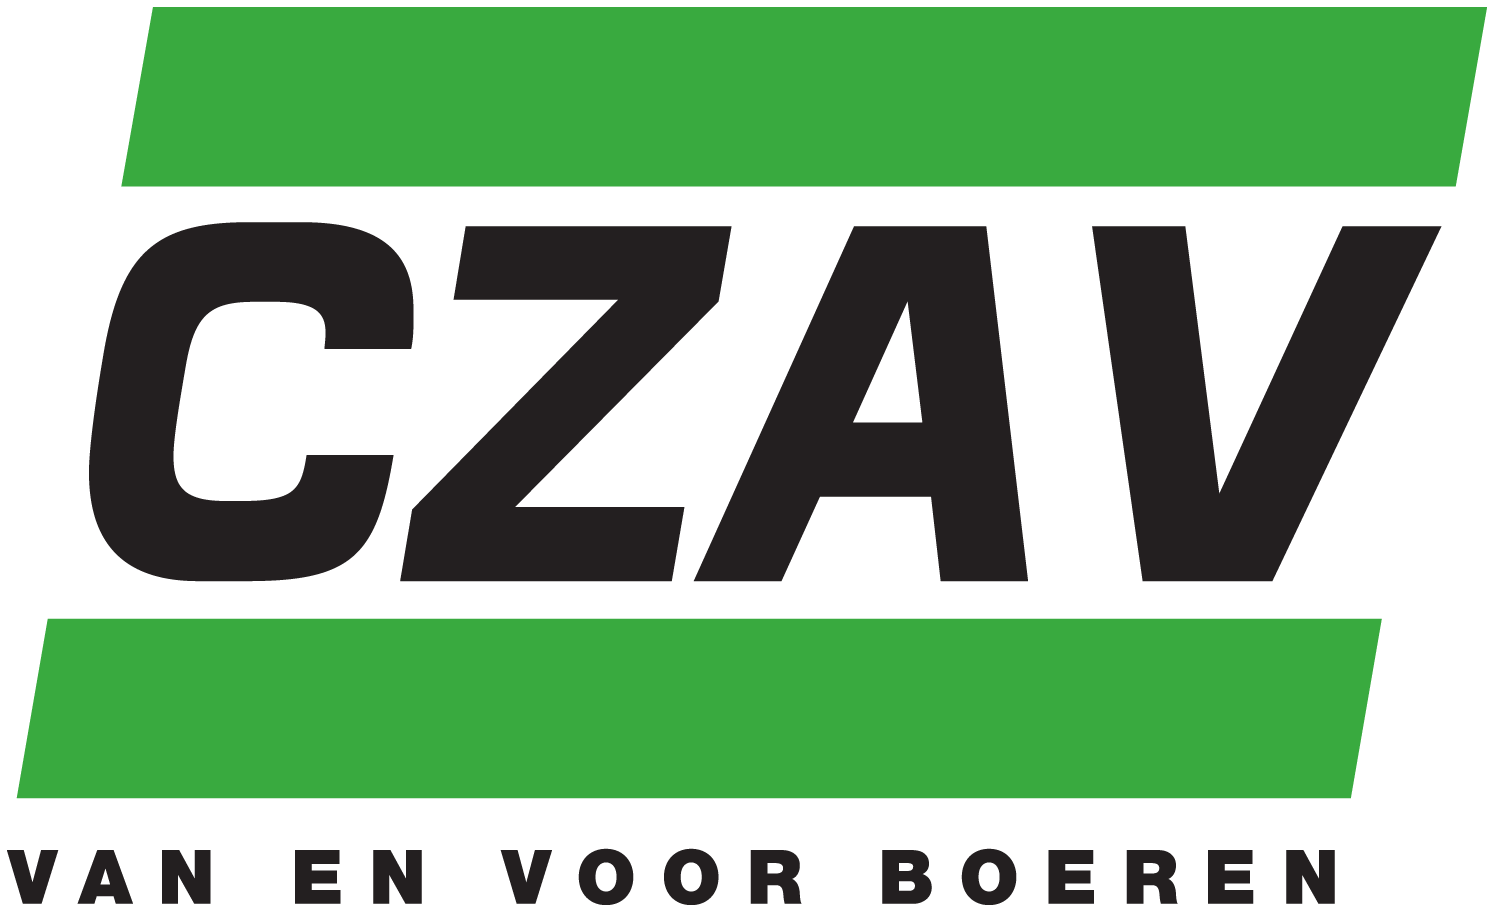 CZAV logo